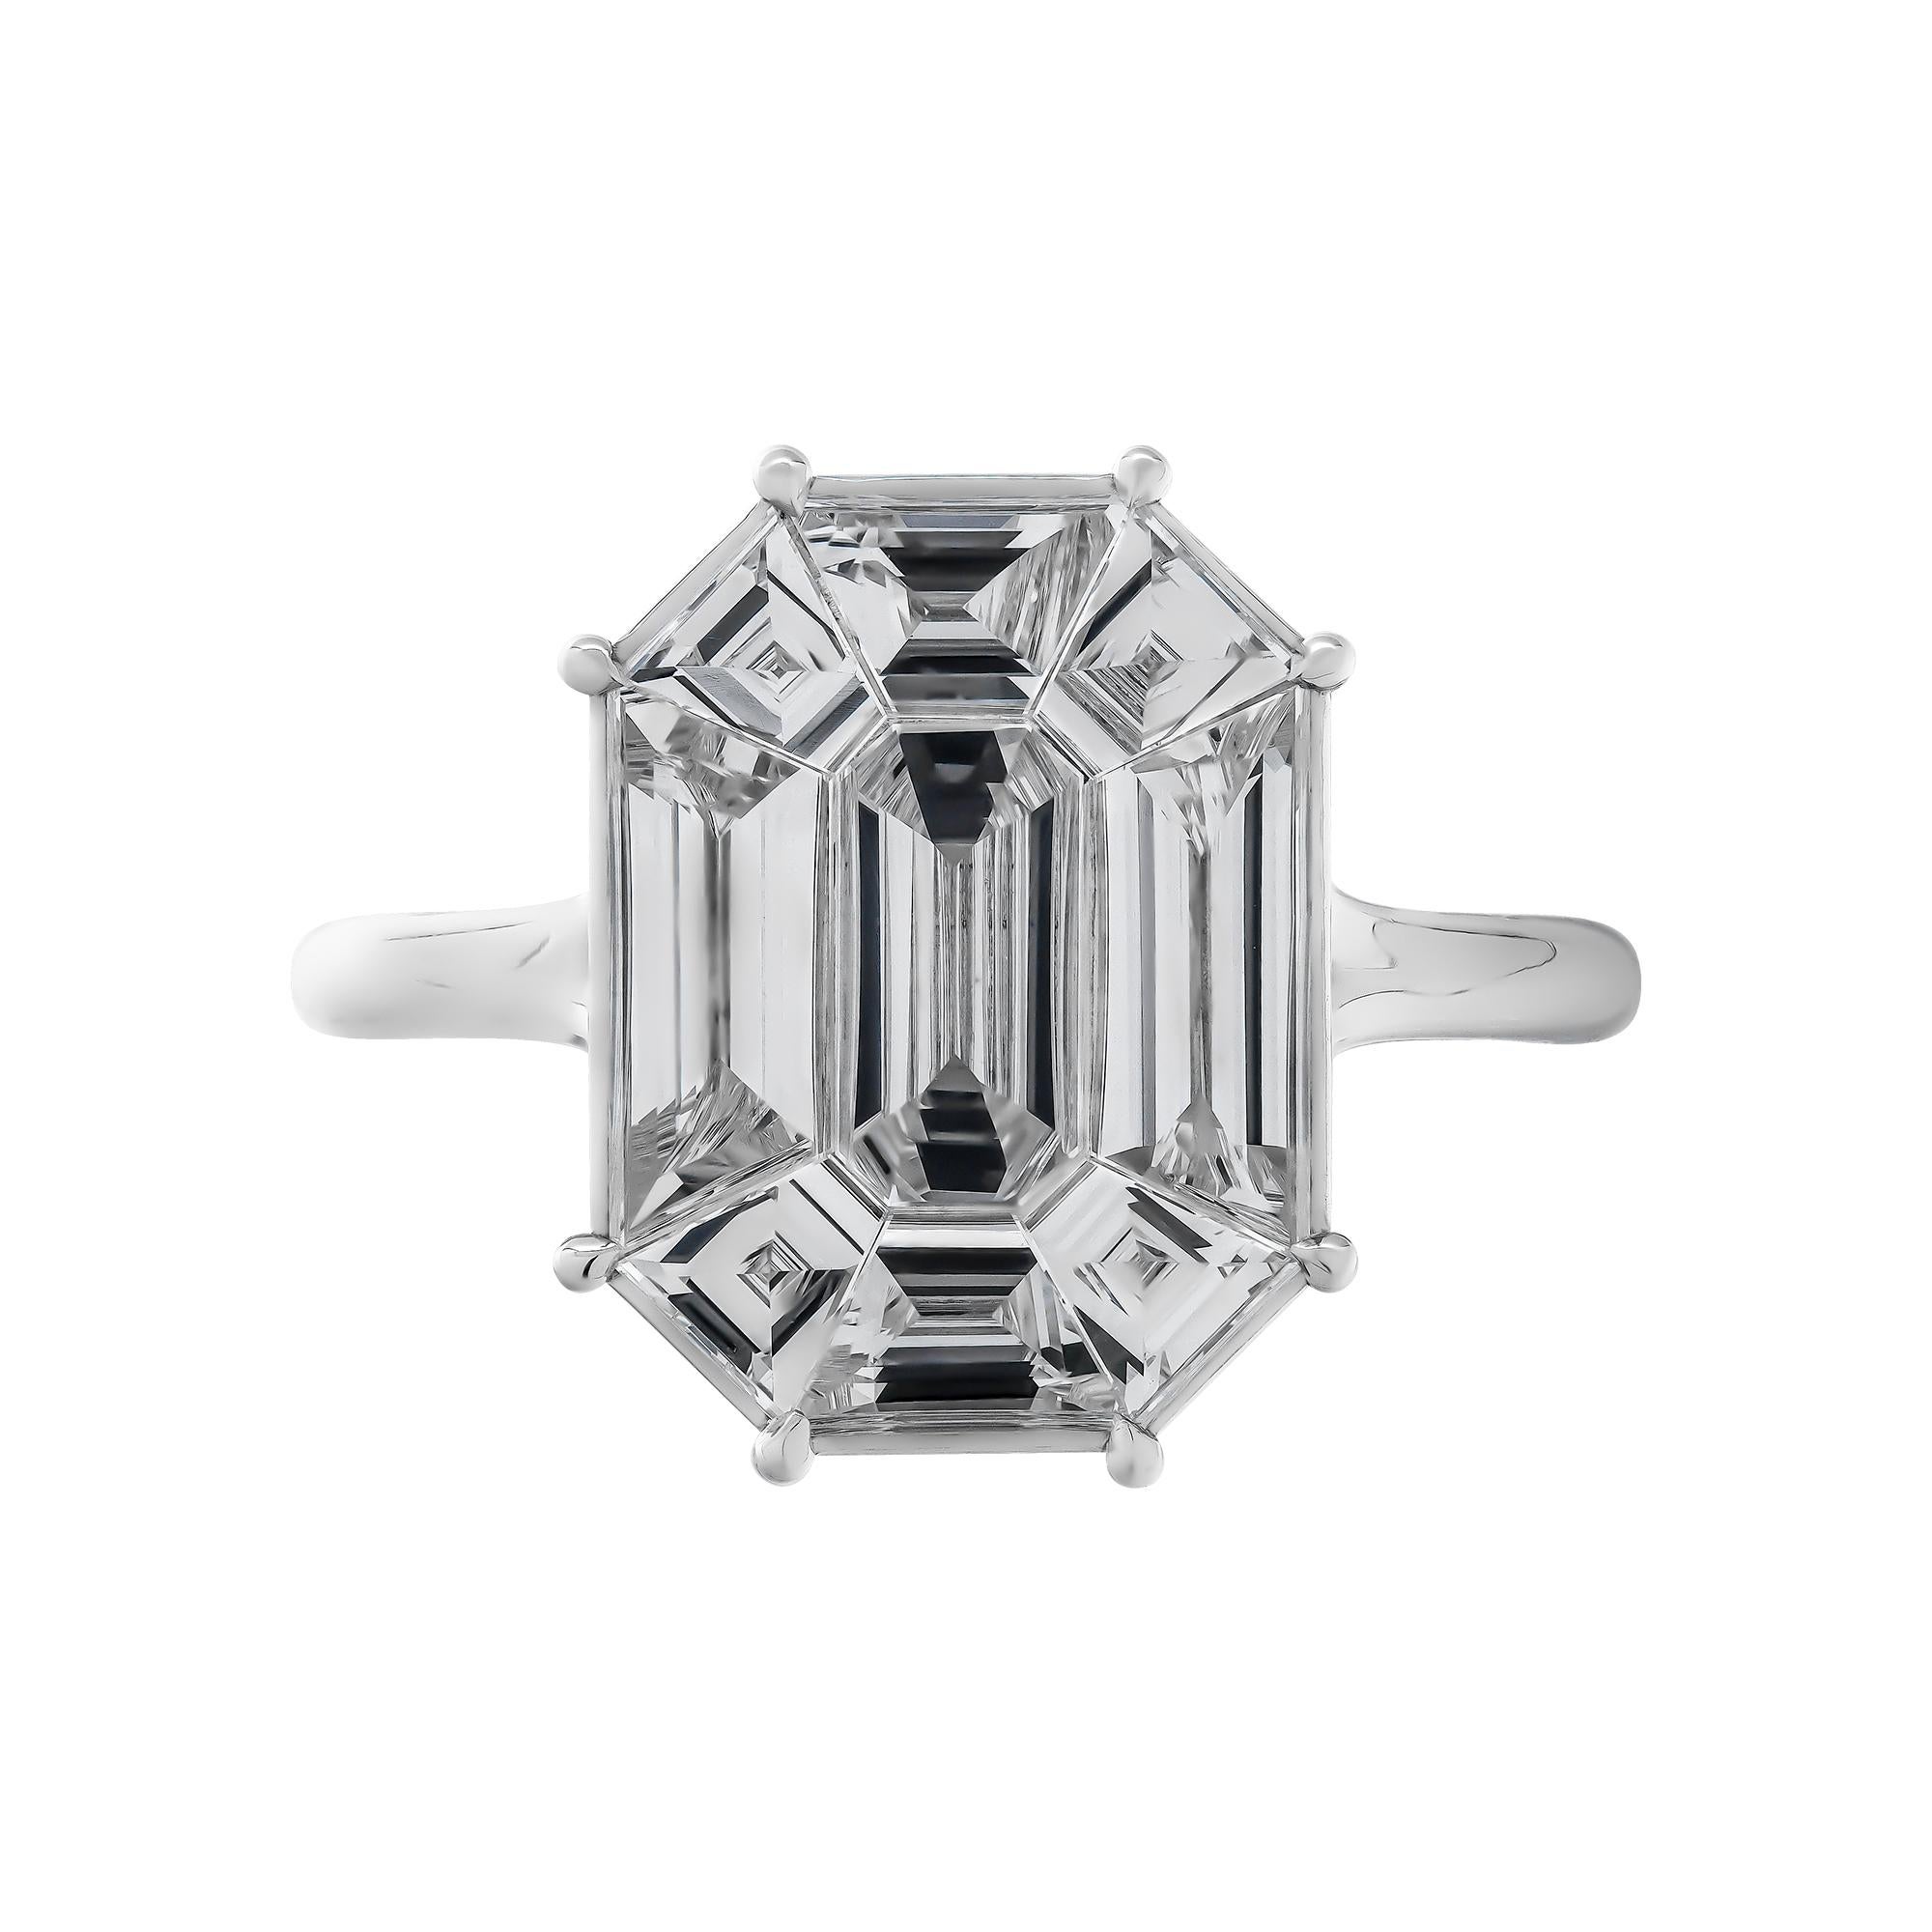 Un véritable bijou !
Magnifique, audacieuse et intemporelle, cette bague de taille émeraude sertie d'un diamant Pie Cut d'une valeur totale de 2,20 carats offre l'aspect d'un diamant de 5 à 6 carats pour une fraction du prix ! Tous les diamants sont